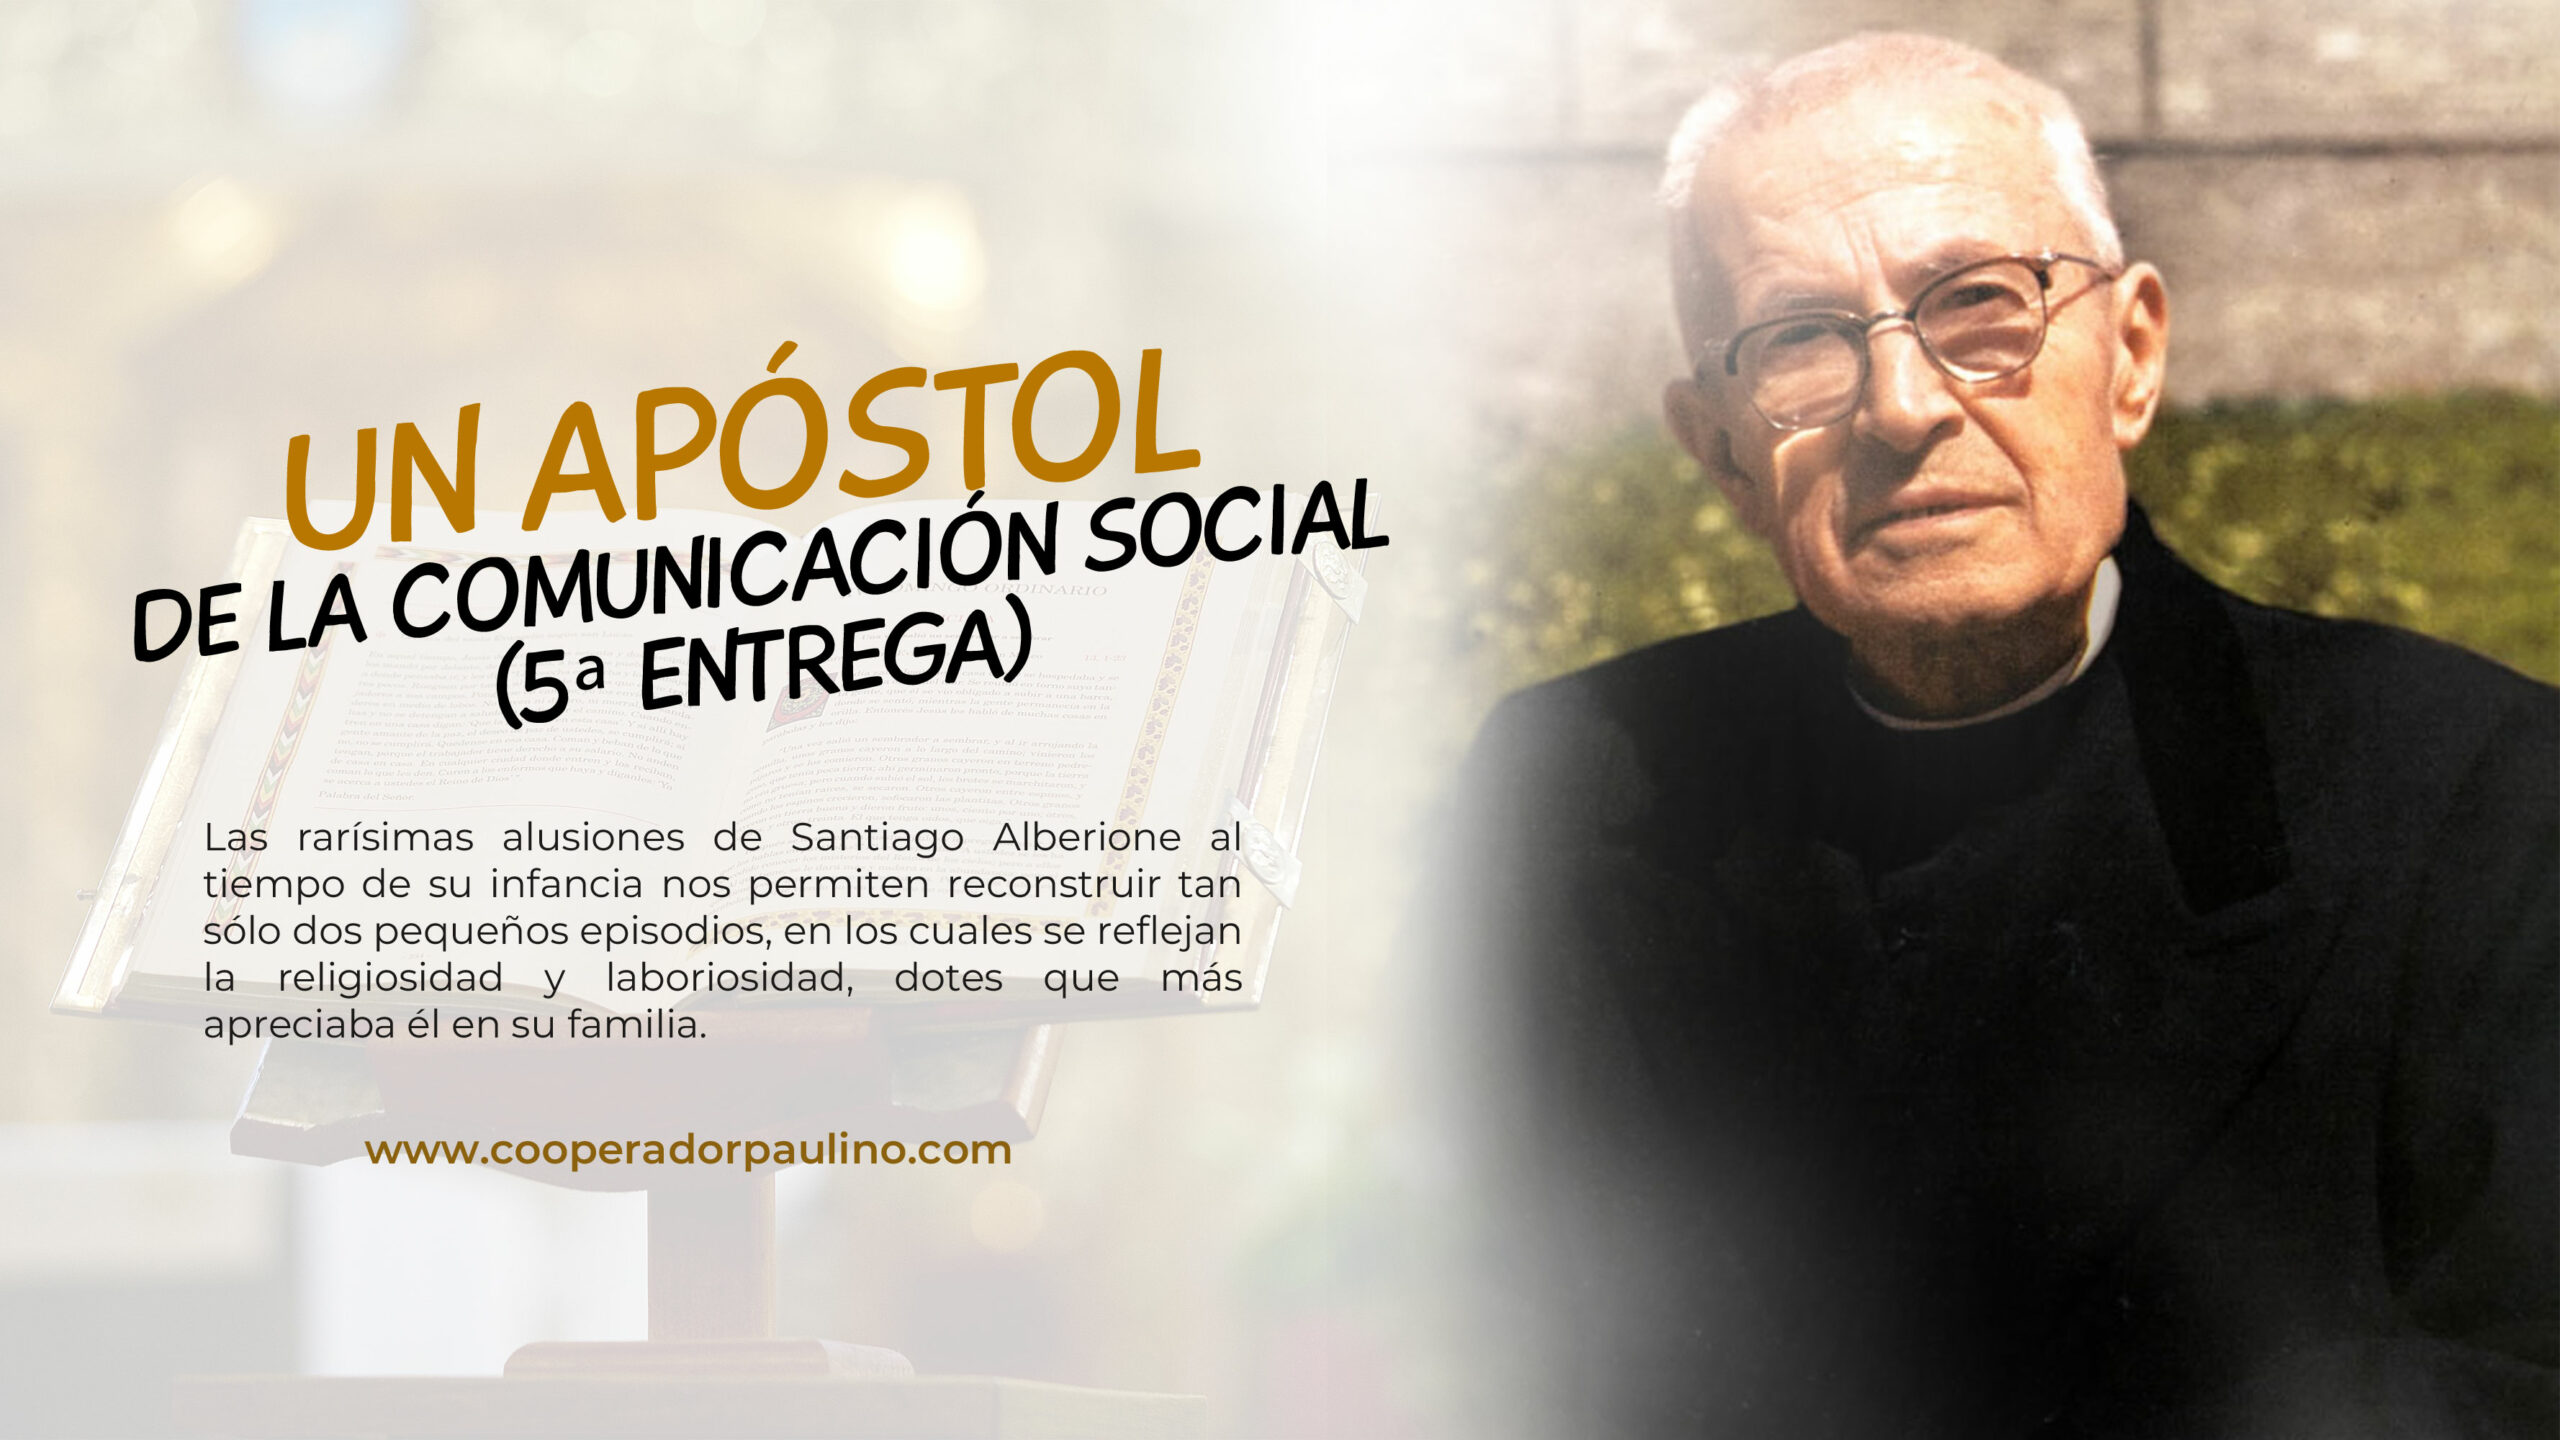 PARA CONOCER AL BEATO SANTIAGO ALBERIONE – UN APÓSTOL DE LA COMUNICACIÓN SOCIAL (5ª ENTREGA)